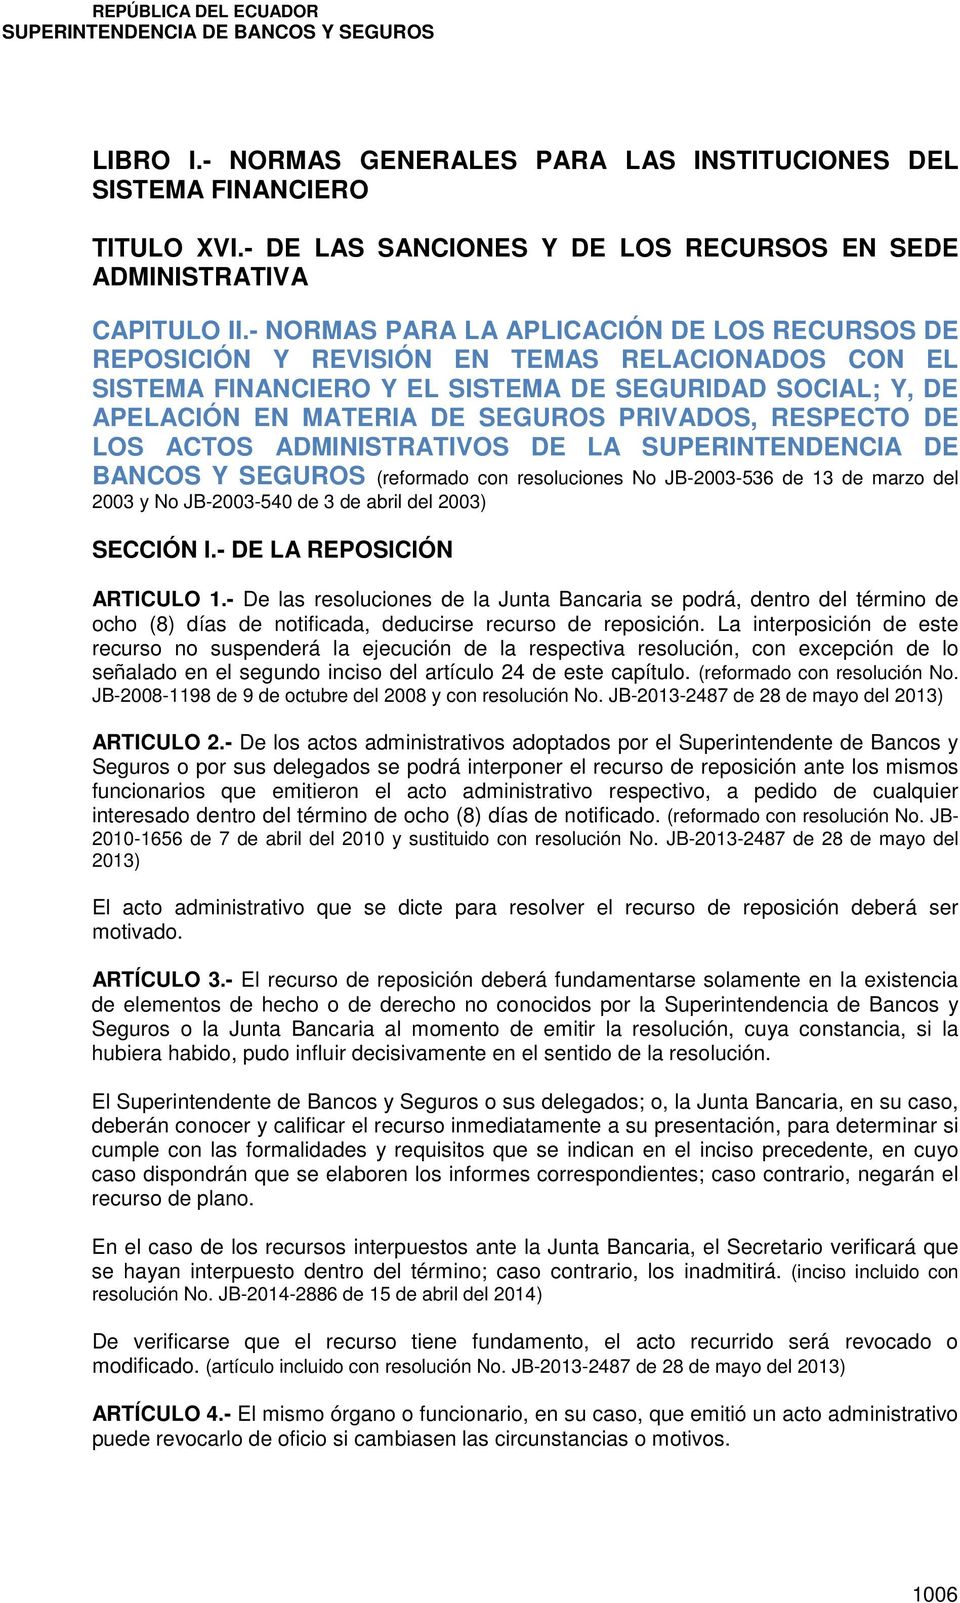 RESPECTO DE LOS ACTOS ADMINISTRATIVOS DE LA SUPERINTENDENCIA DE BANCOS Y SEGUROS (reformado con resoluciones No JB-2003-536 de 13 de marzo del 2003 y No JB-2003-540 de 3 de abril del 2003) SECCIÓN I.